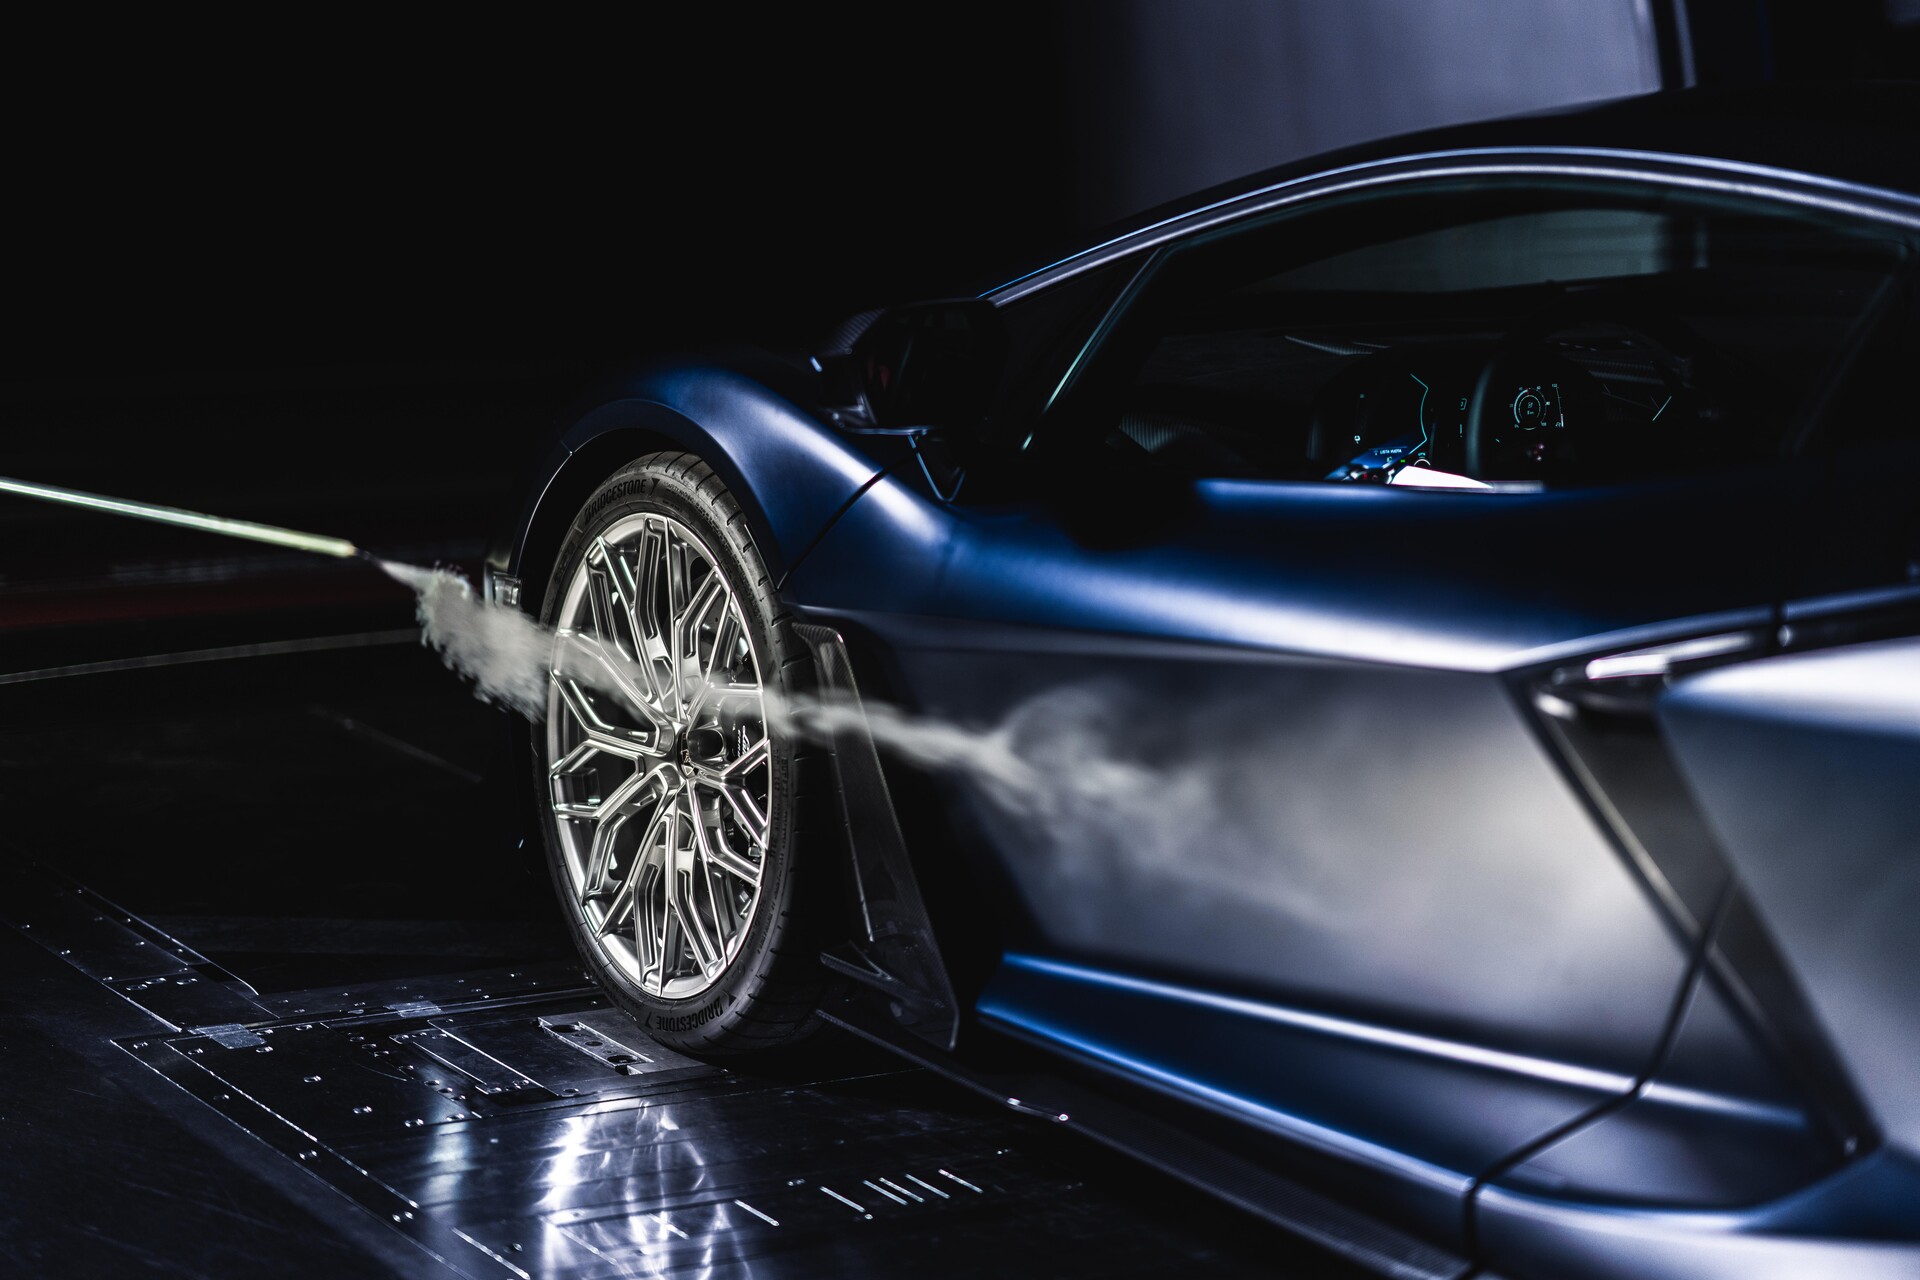 طراحی و آیرودینامیک: ویدیوی "فراتر از طراحی، تسلط بر هوا" توسط Automobili Lamborghini